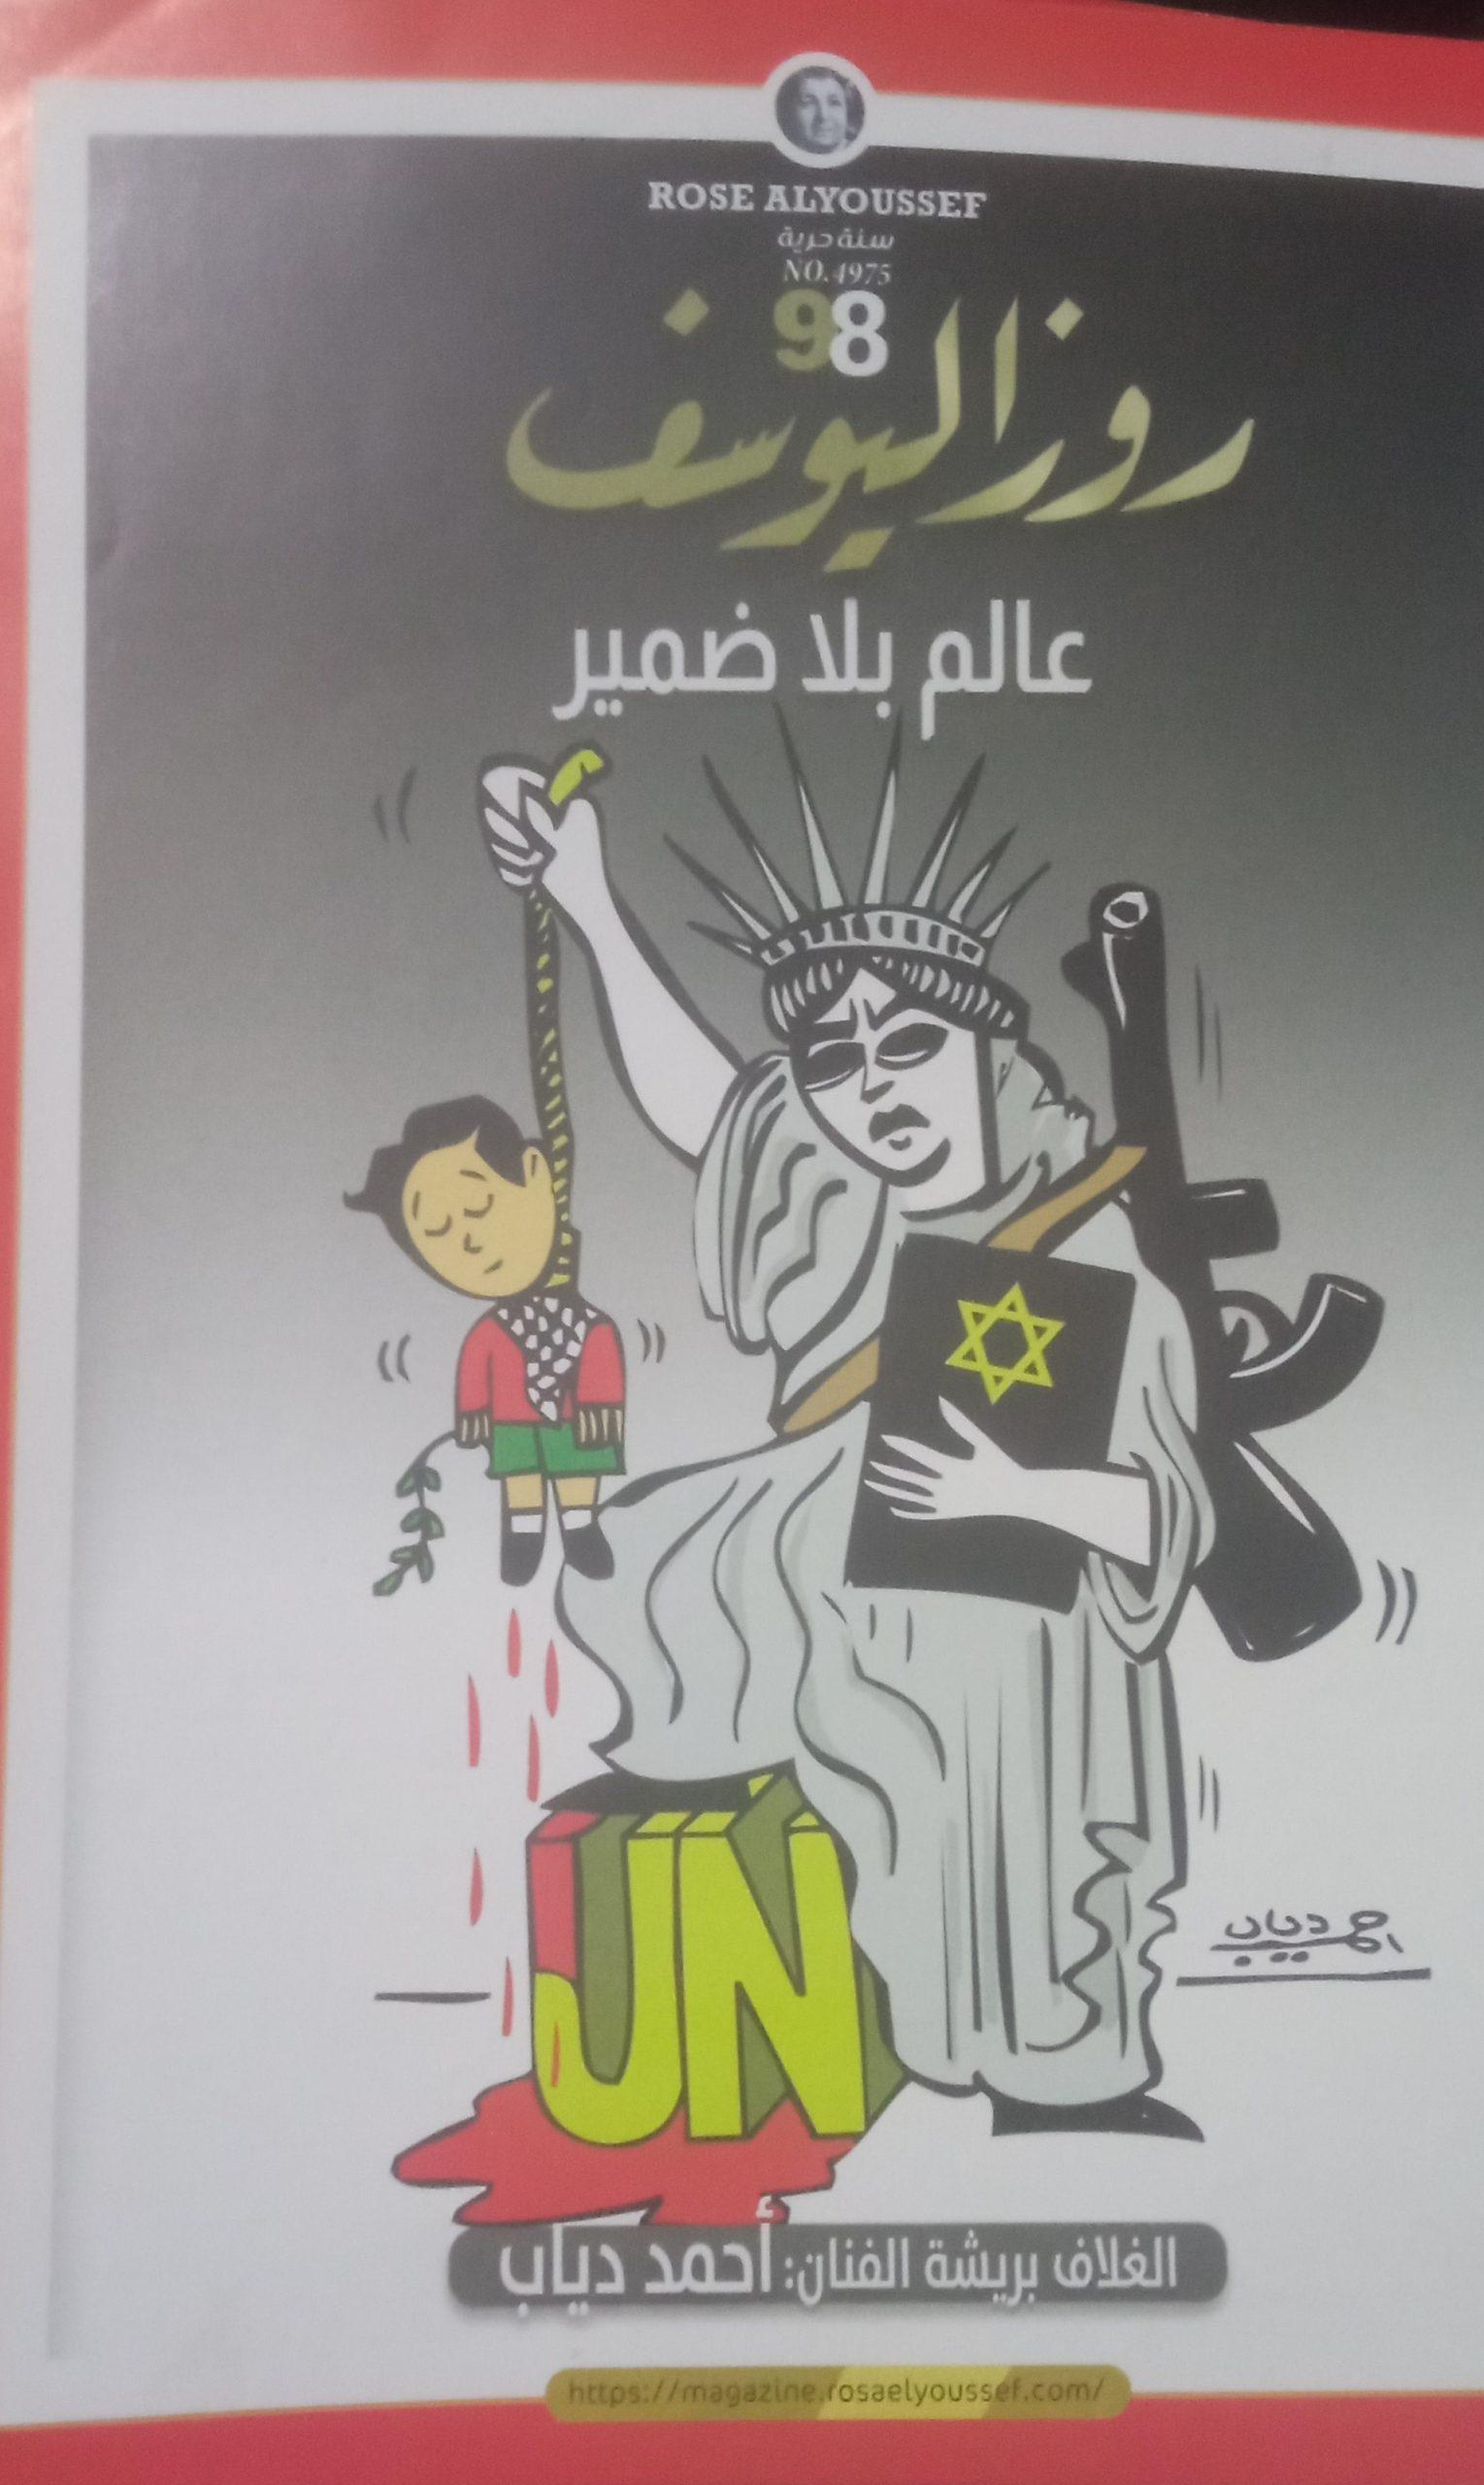 3 - كاريكاتير روز اليوسف، 21 أكتوبر